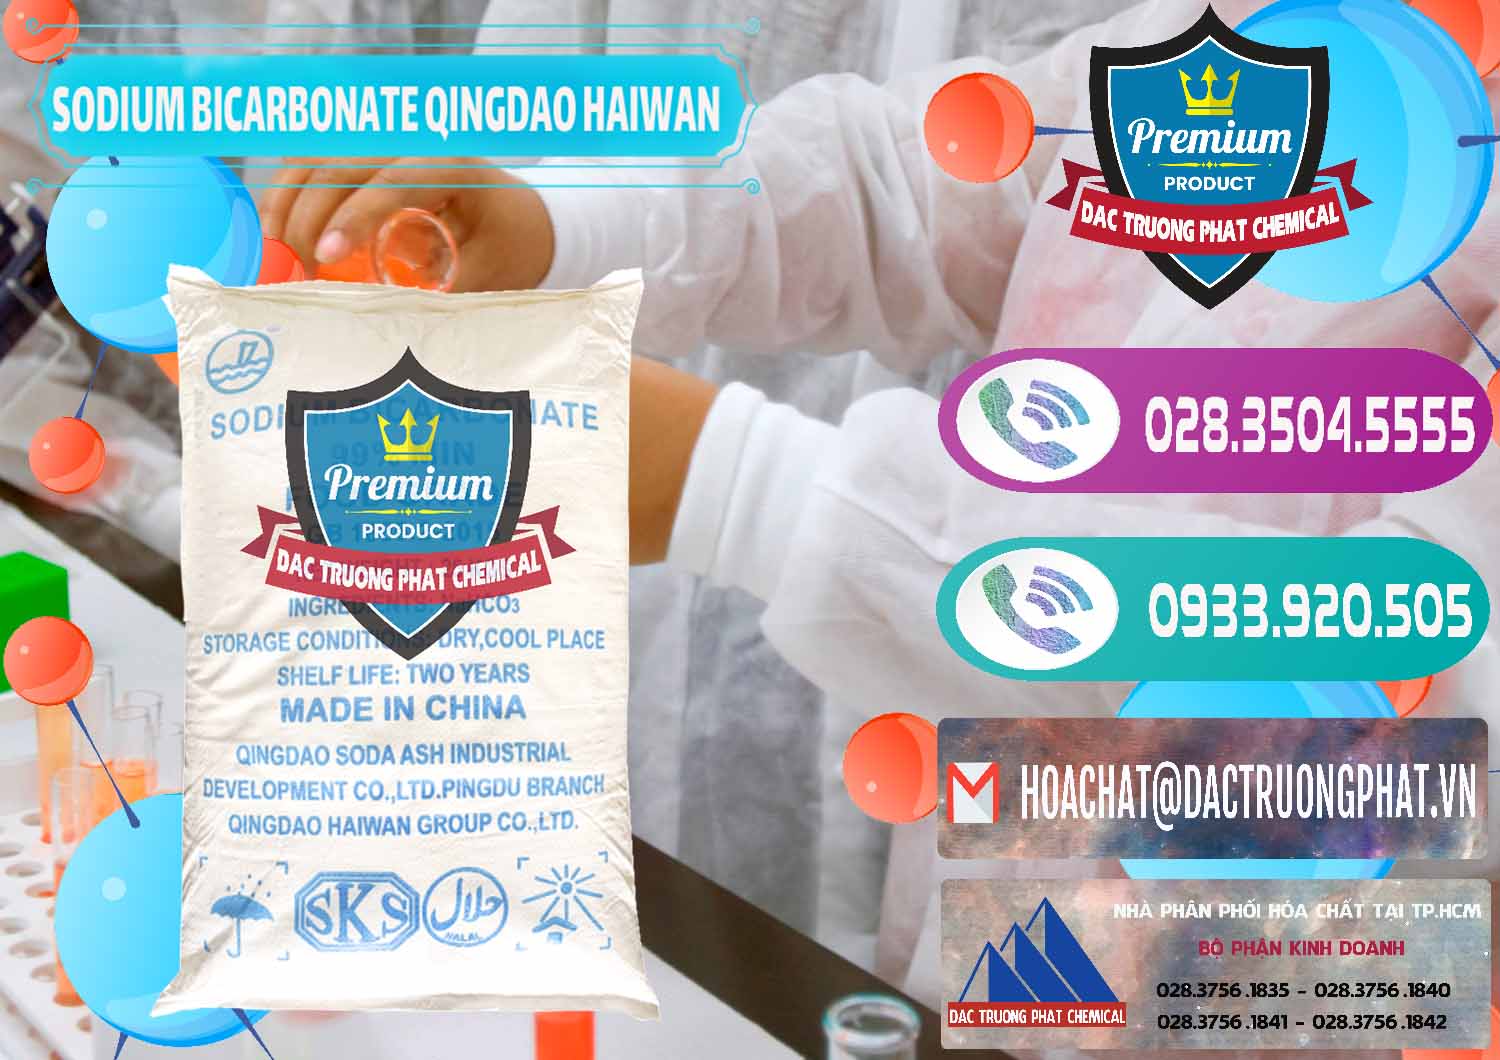 Công ty bán - cung ứng Sodium Bicarbonate – Bicar NaHCO3 Food Grade Qingdao Haiwan Trung Quốc China - 0258 - Đơn vị chuyên nhập khẩu - cung cấp hóa chất tại TP.HCM - hoachatxulynuoc.com